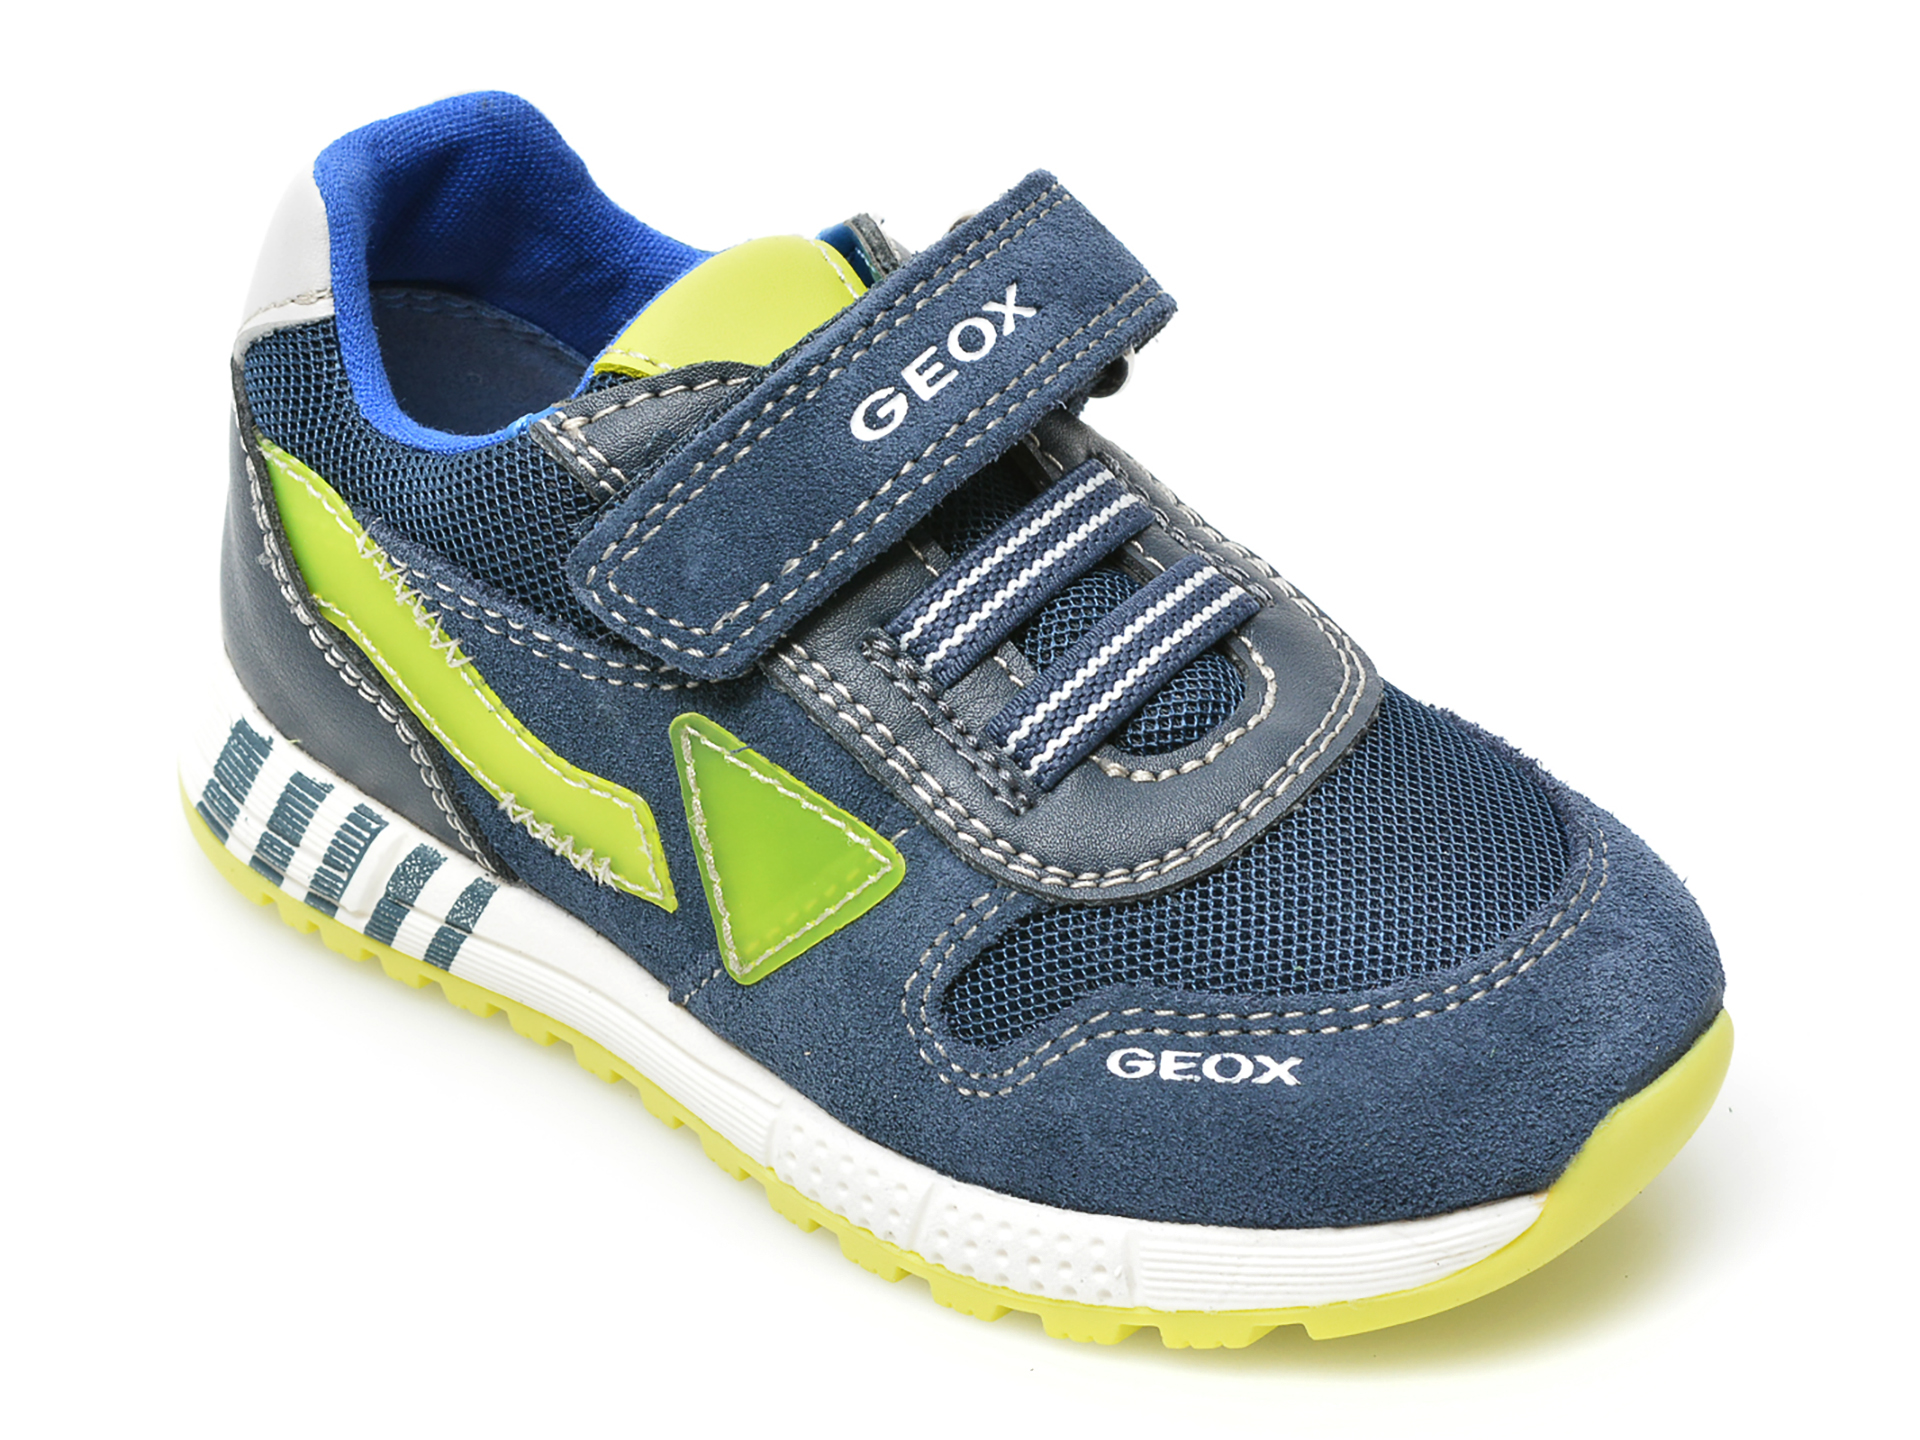 Pantofi sport GEOX bleumarin, B253CA, din material textil si piele intoarsa Geox Geox